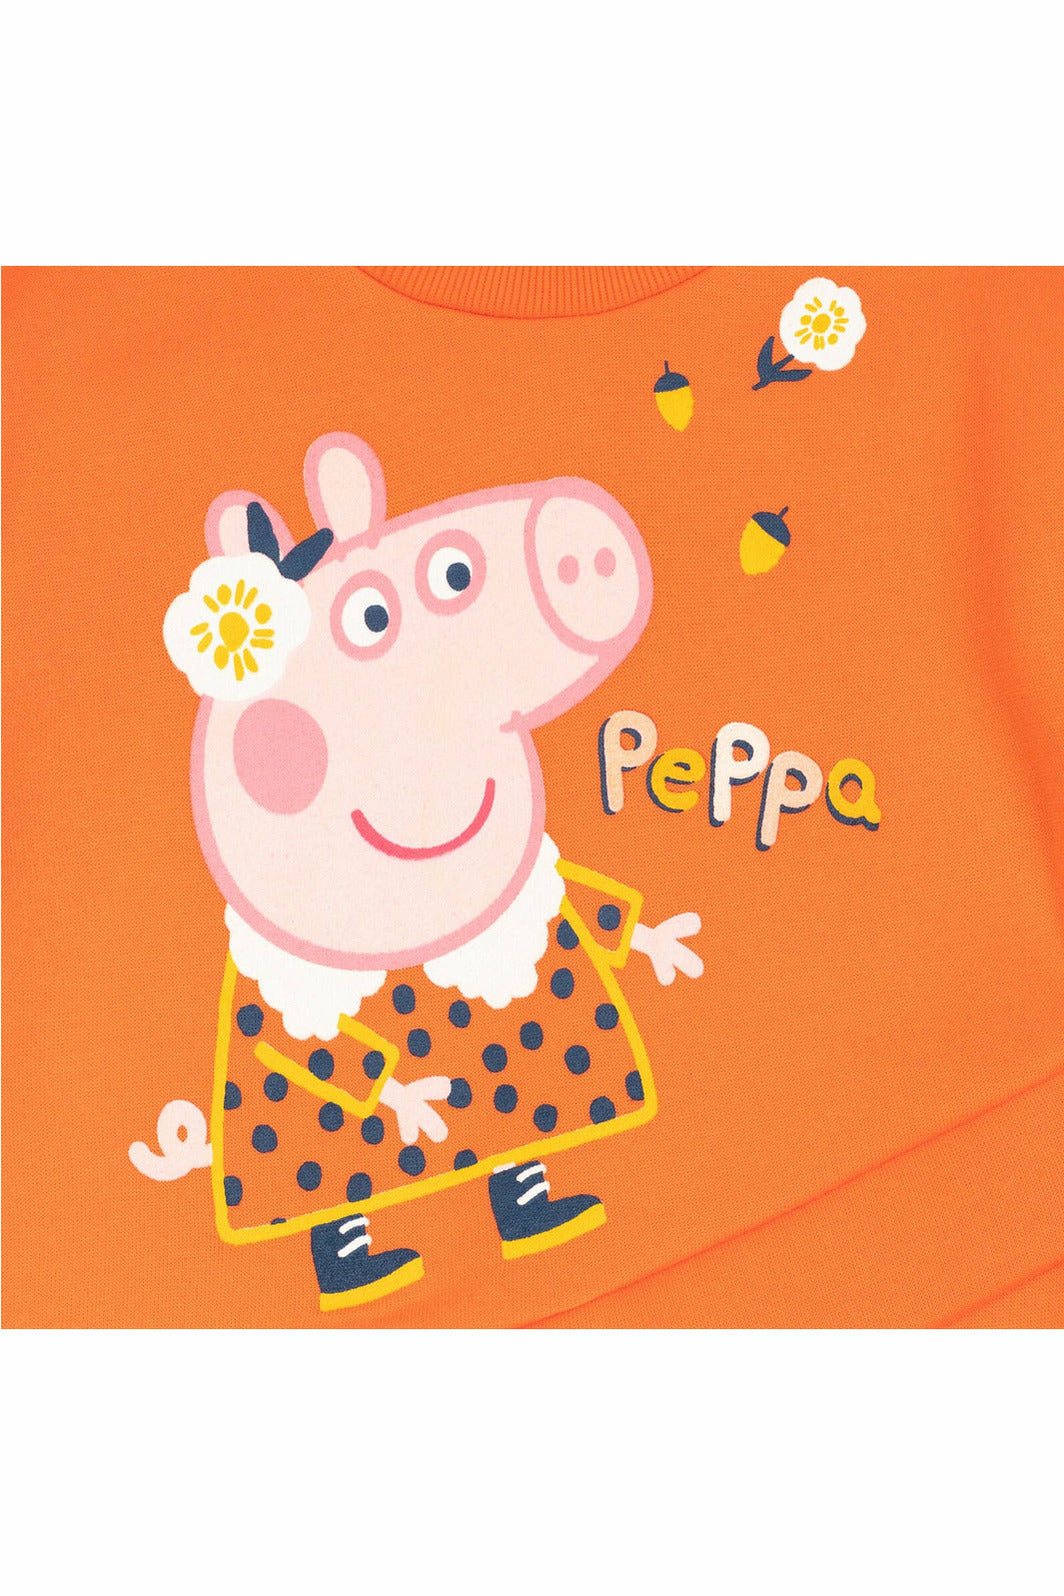 Peppa Pig Fashion Pullover Crossover Fleece Sweatshirt  & Fashion Leggings